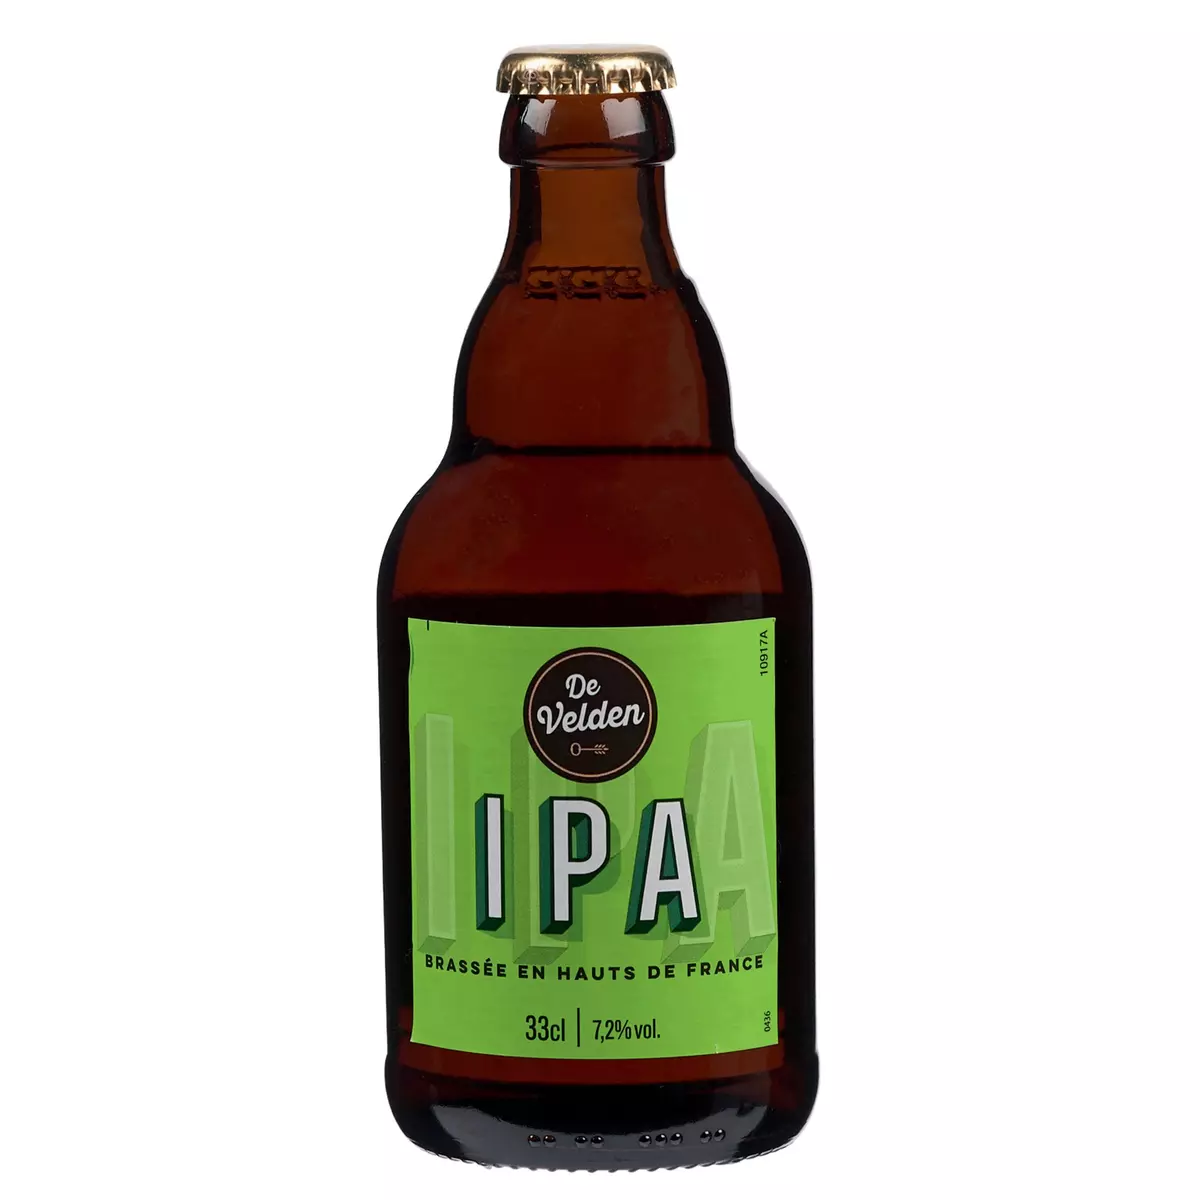 DE VELDEN Bière blonde IPA 7,2% bouteille 33cl